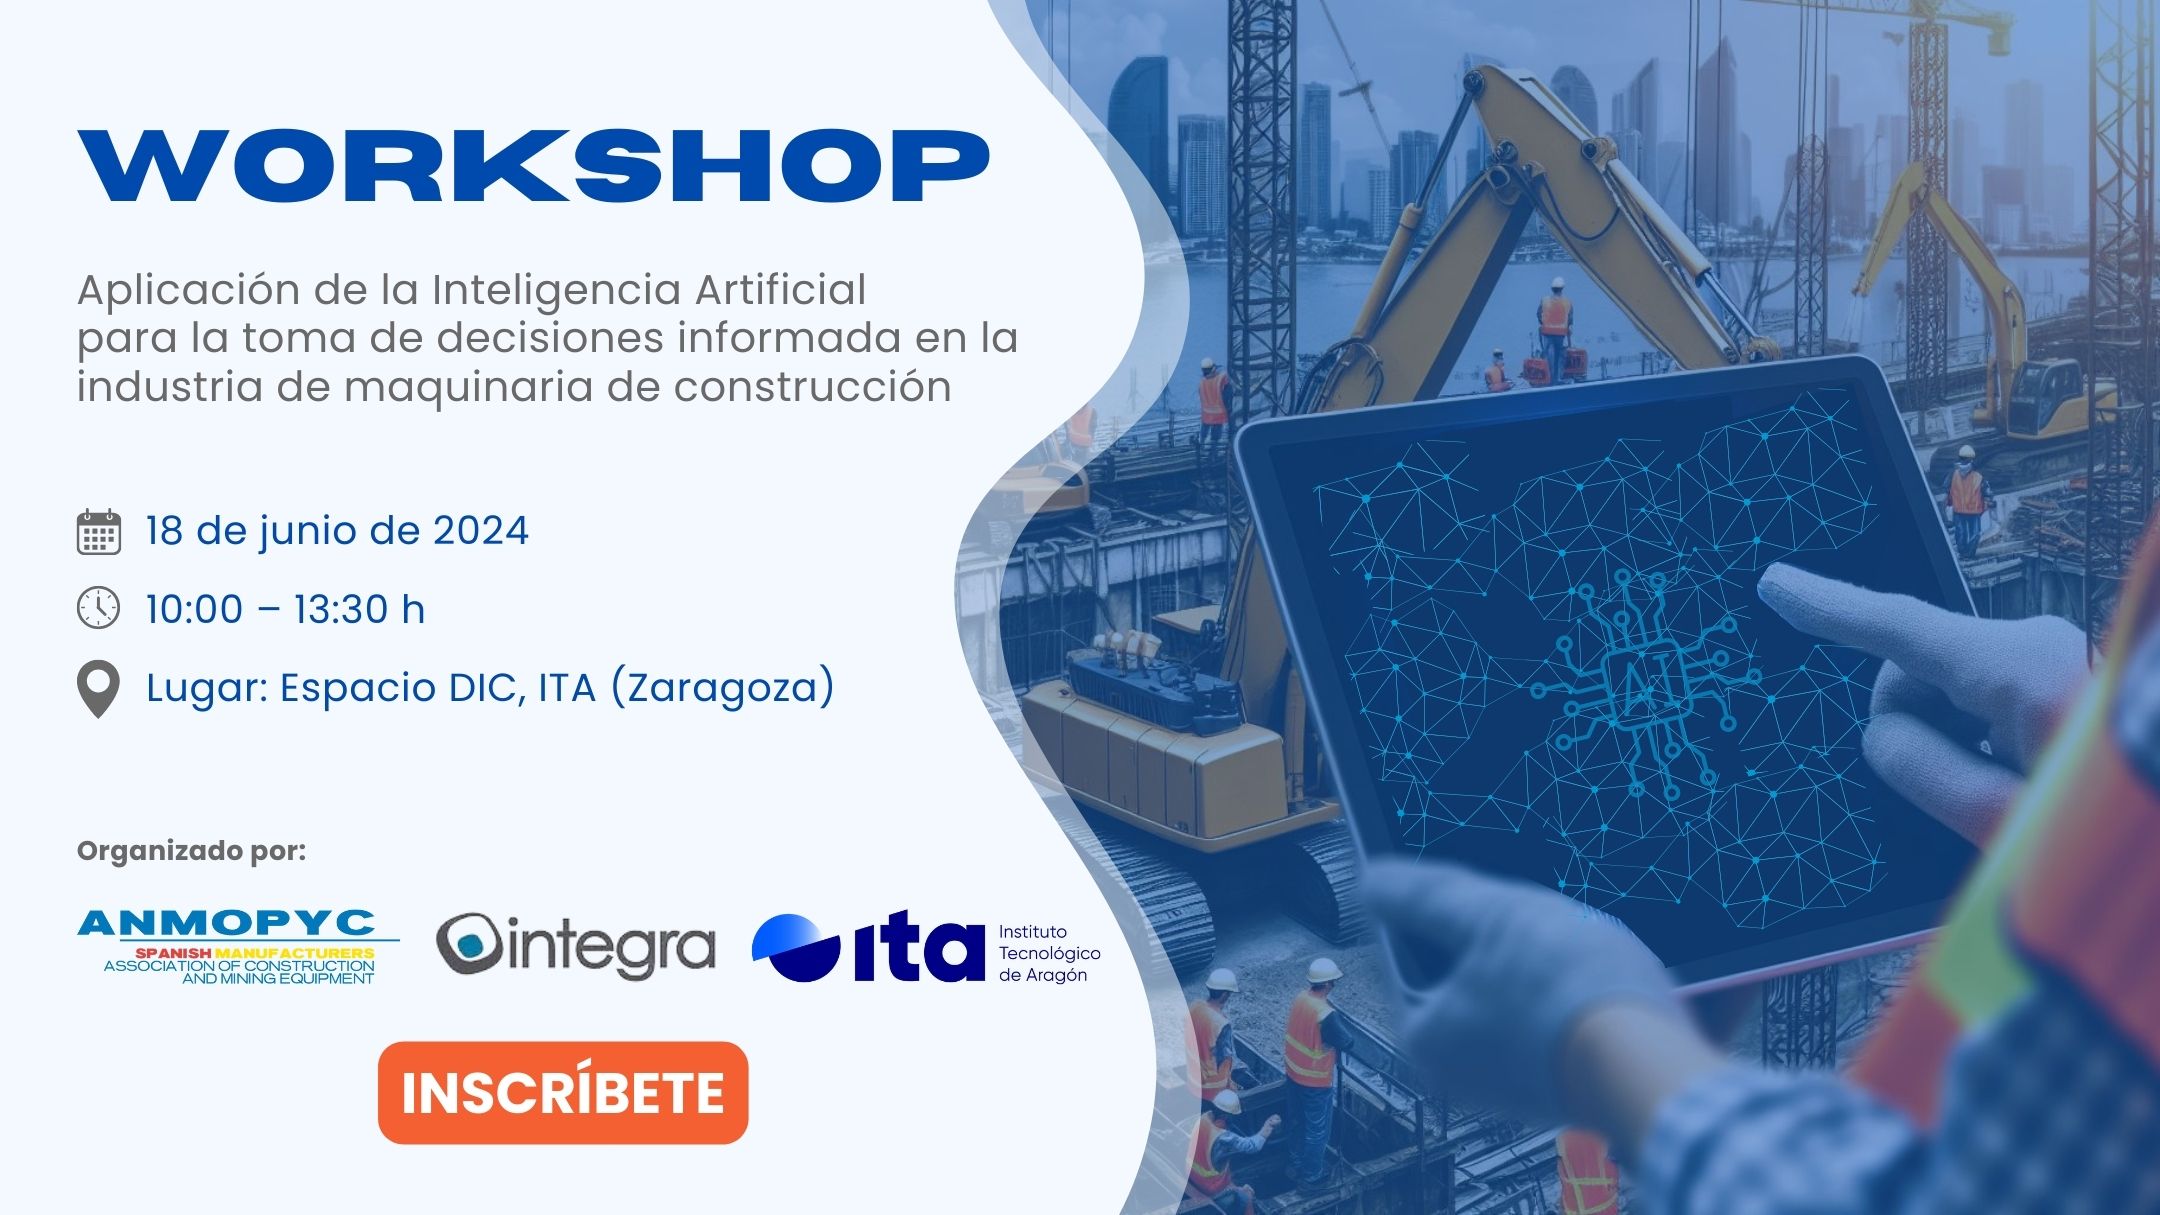 Workshop sobre IA para la industria de maquinaria de construcción